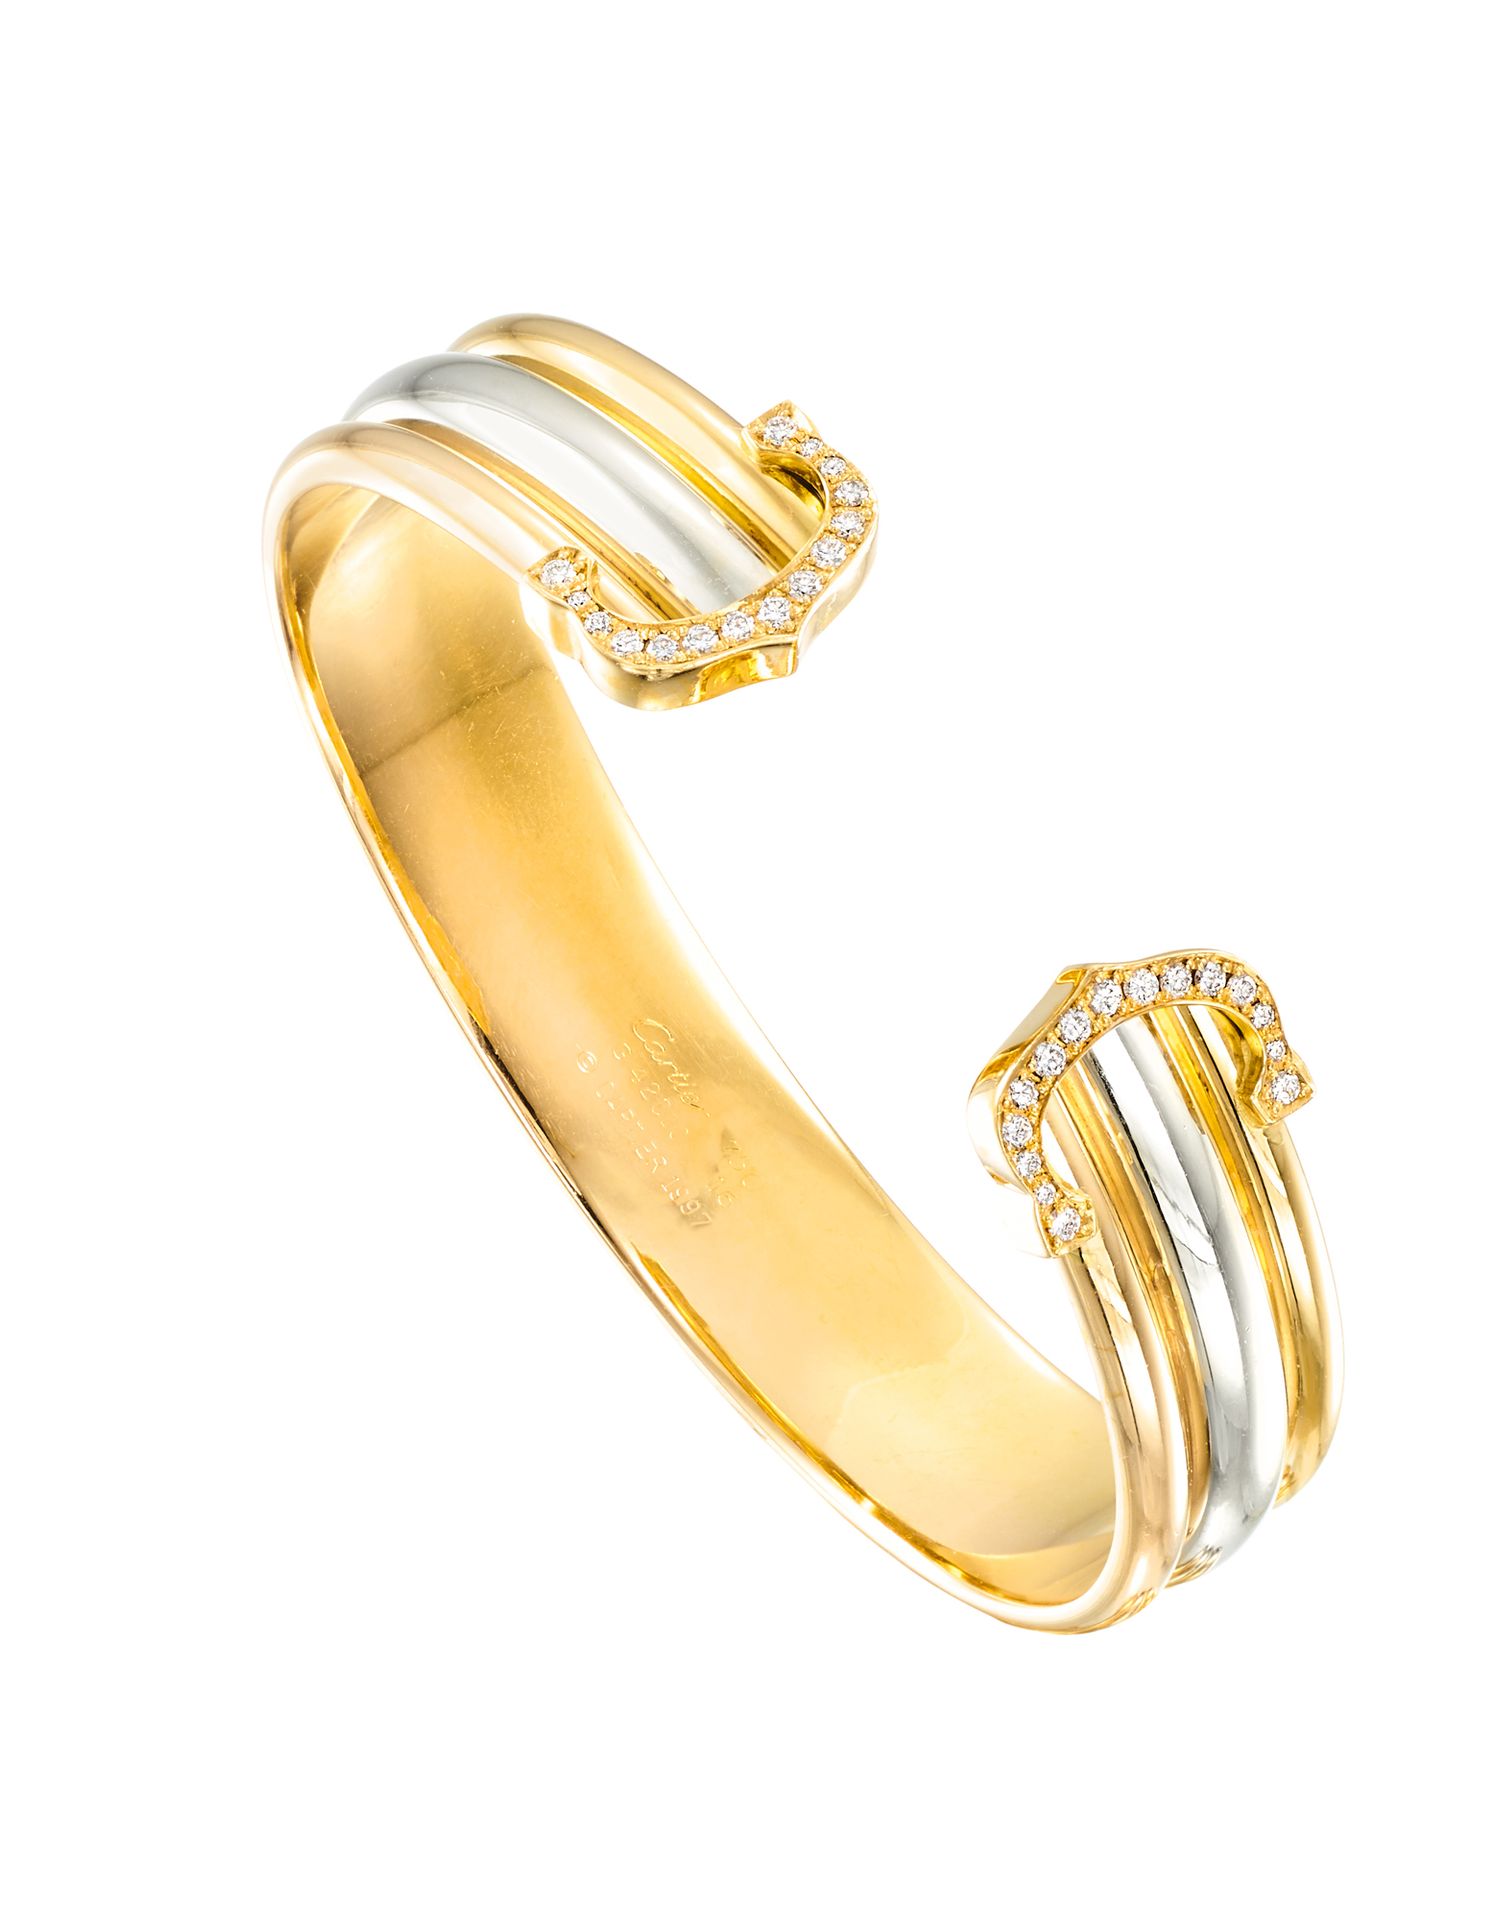 CARTIER Collection "Double C"
Bracelet rigide type jonc godronné de forme ovalis&hellip;